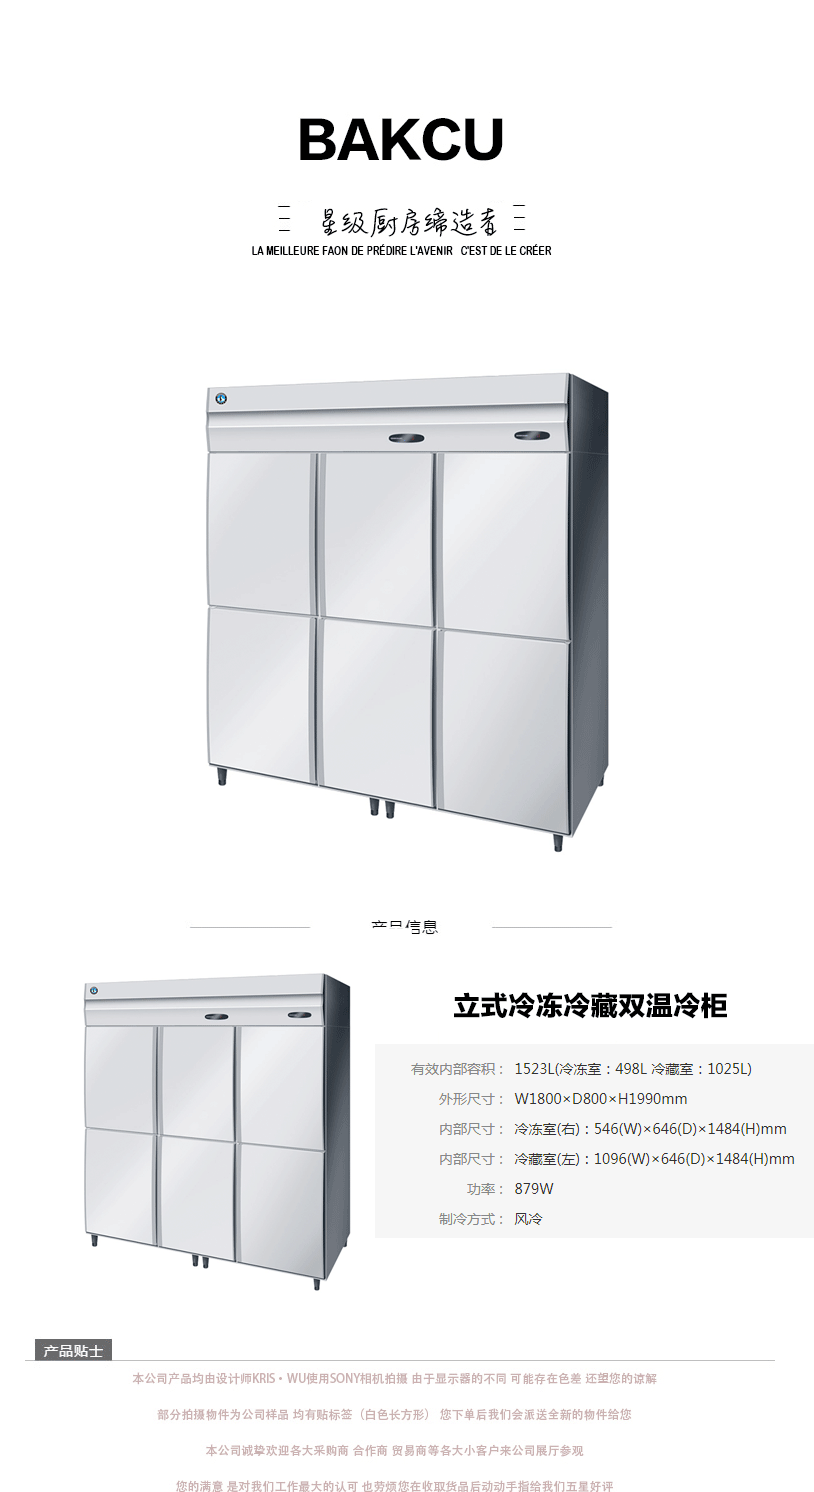 日本HOSHIZAKI星崎不锈钢原装进口立式冷冻冷藏双温冷柜 M系列示例图1